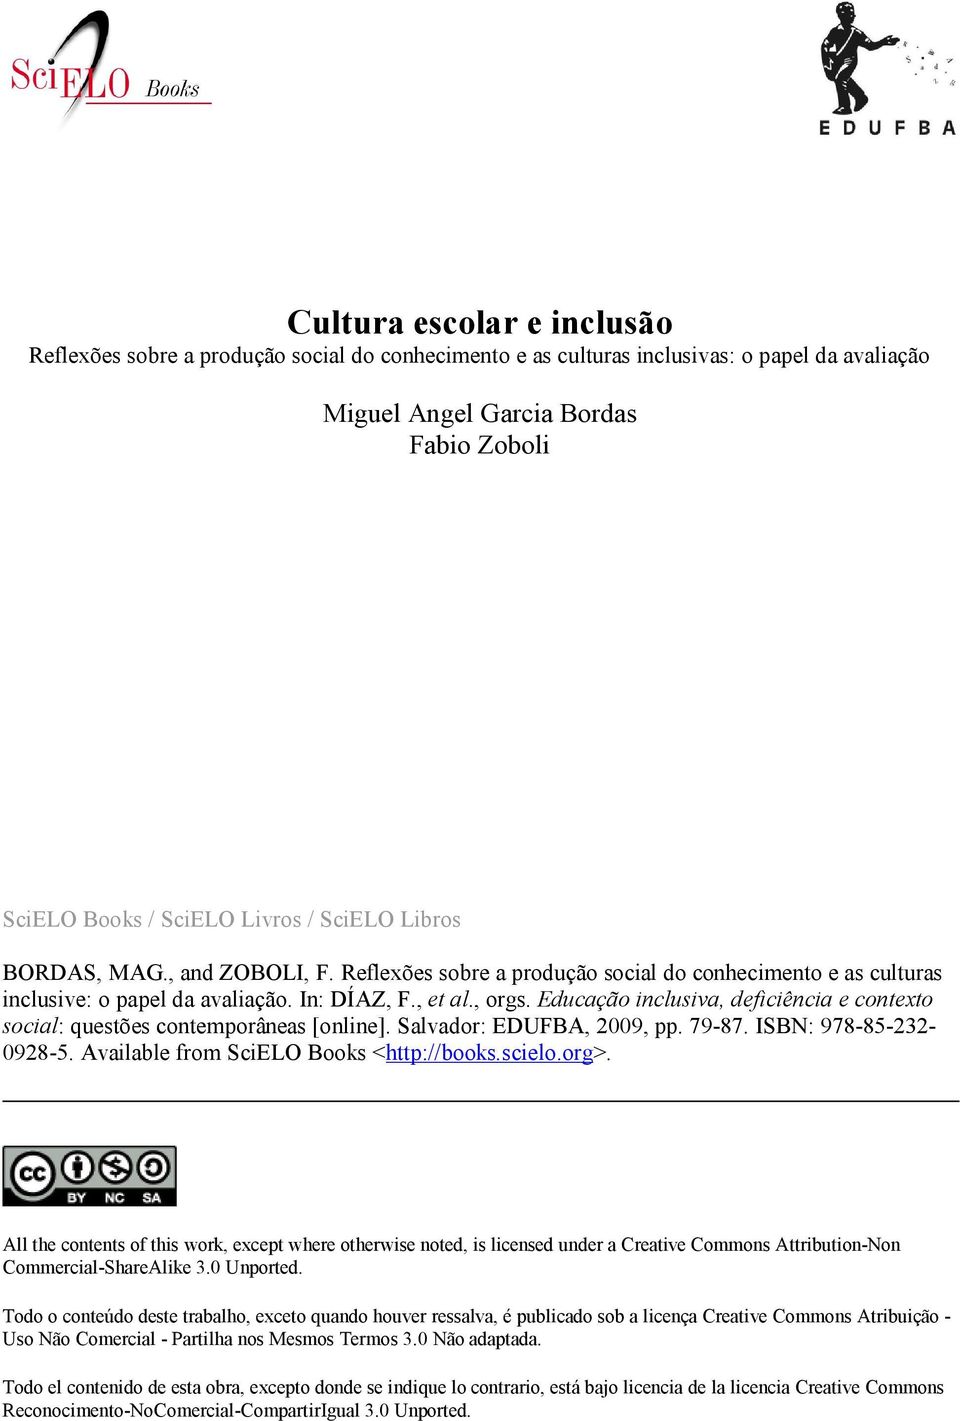 Educação inclusiva, deficiência e contexto social: questões contemporâneas [online]. Salvador: EDUFBA, 2009, pp. 79-87. ISBN: 978-85-232-0928-5. Available from SciELO Books <http://books.scielo.org>.